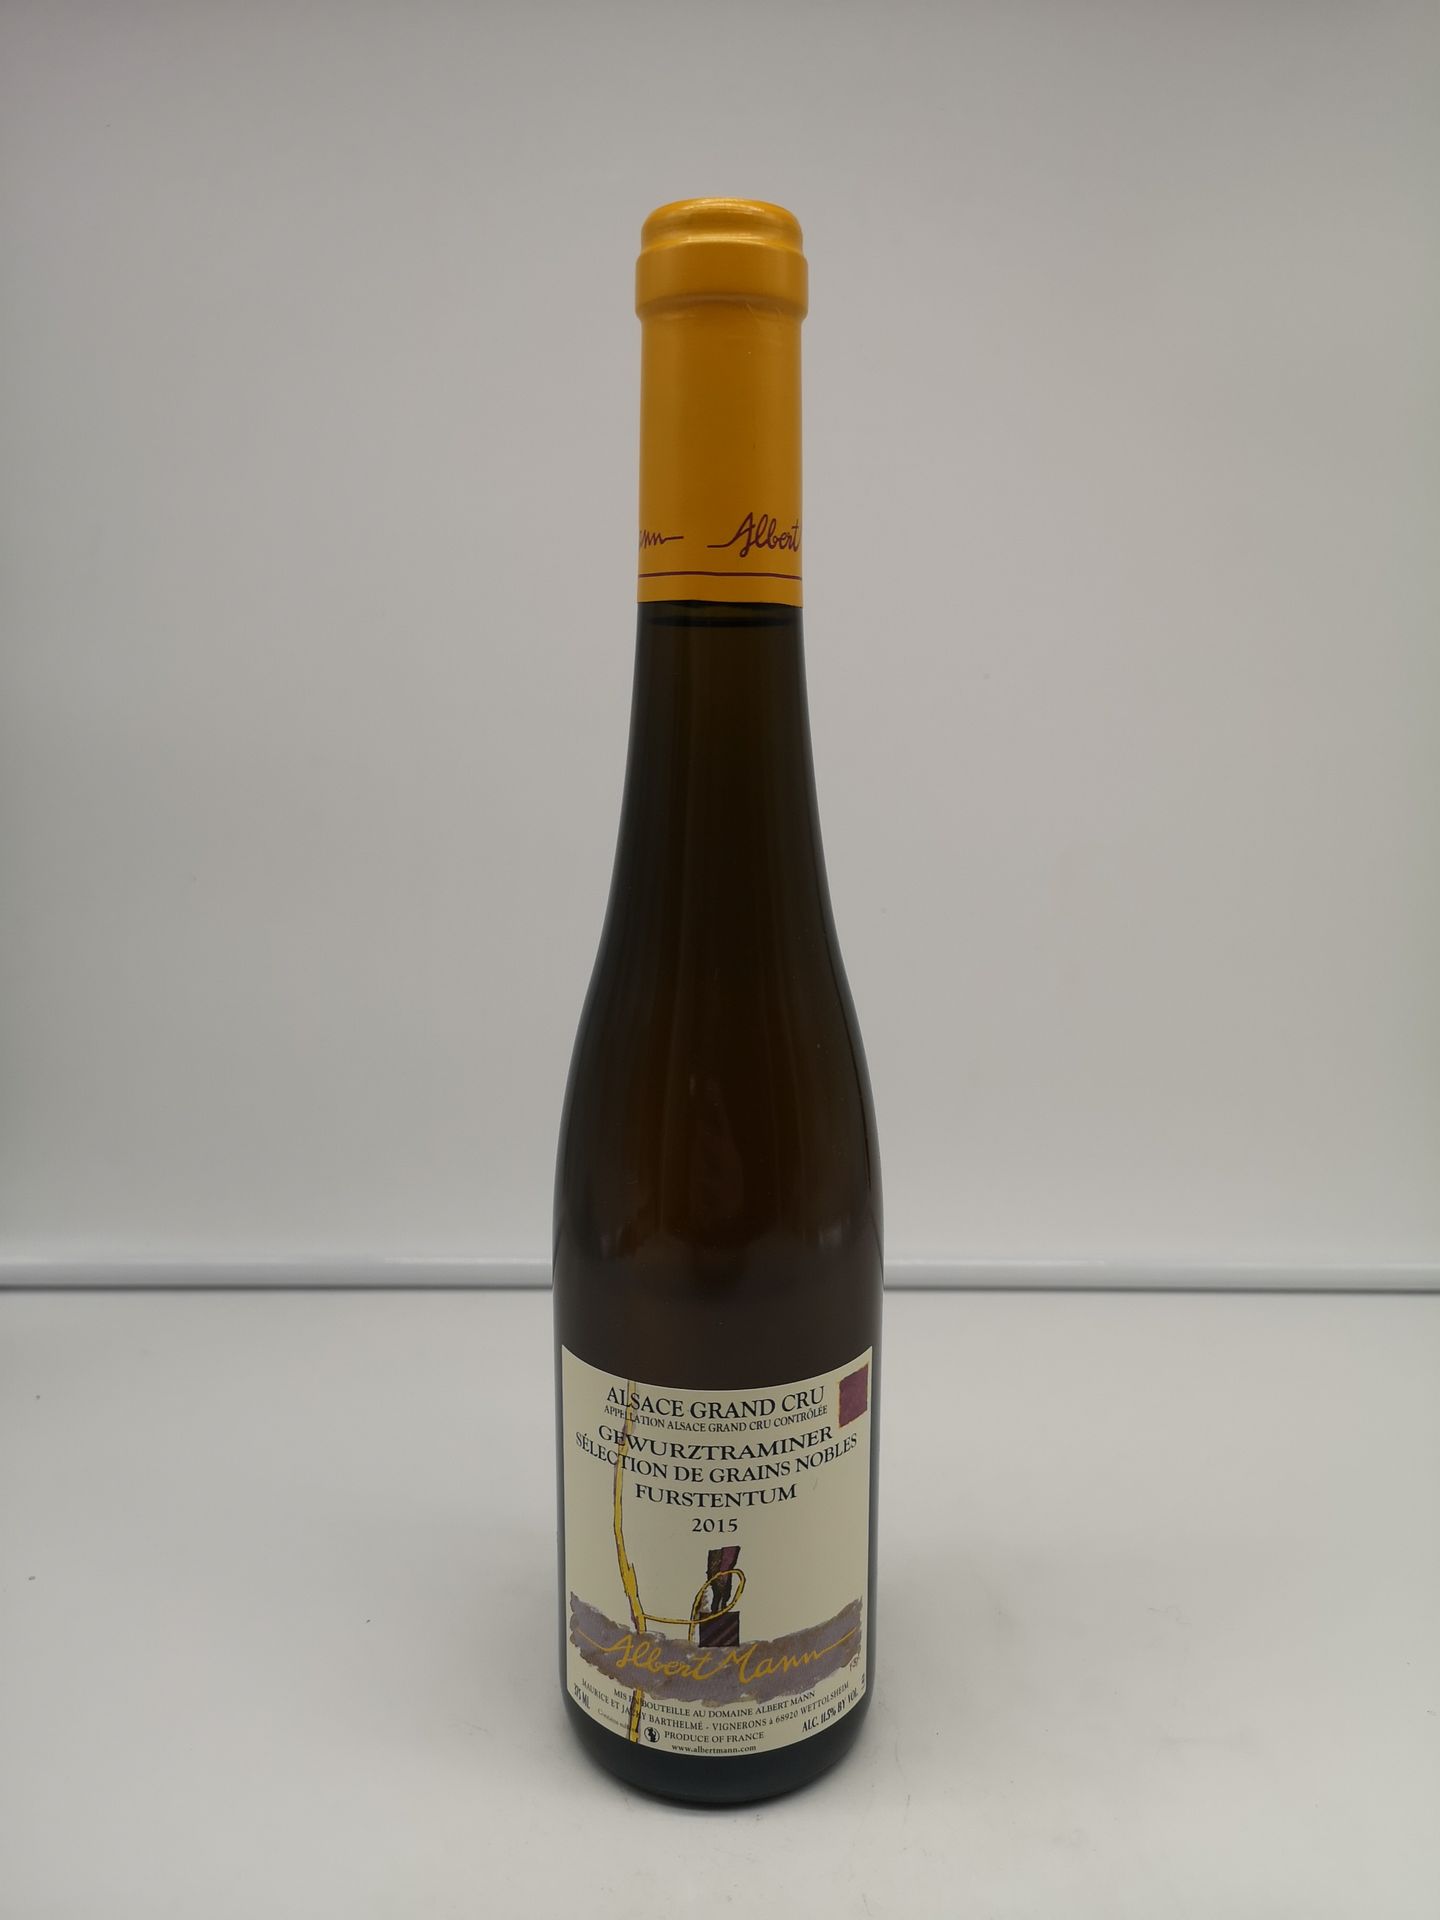 Null 12个半瓶阿尔伯特-曼的格乌斯塔明纳特级酒庄Furstentum Sélection de Grains Nobles 2015 Alsace